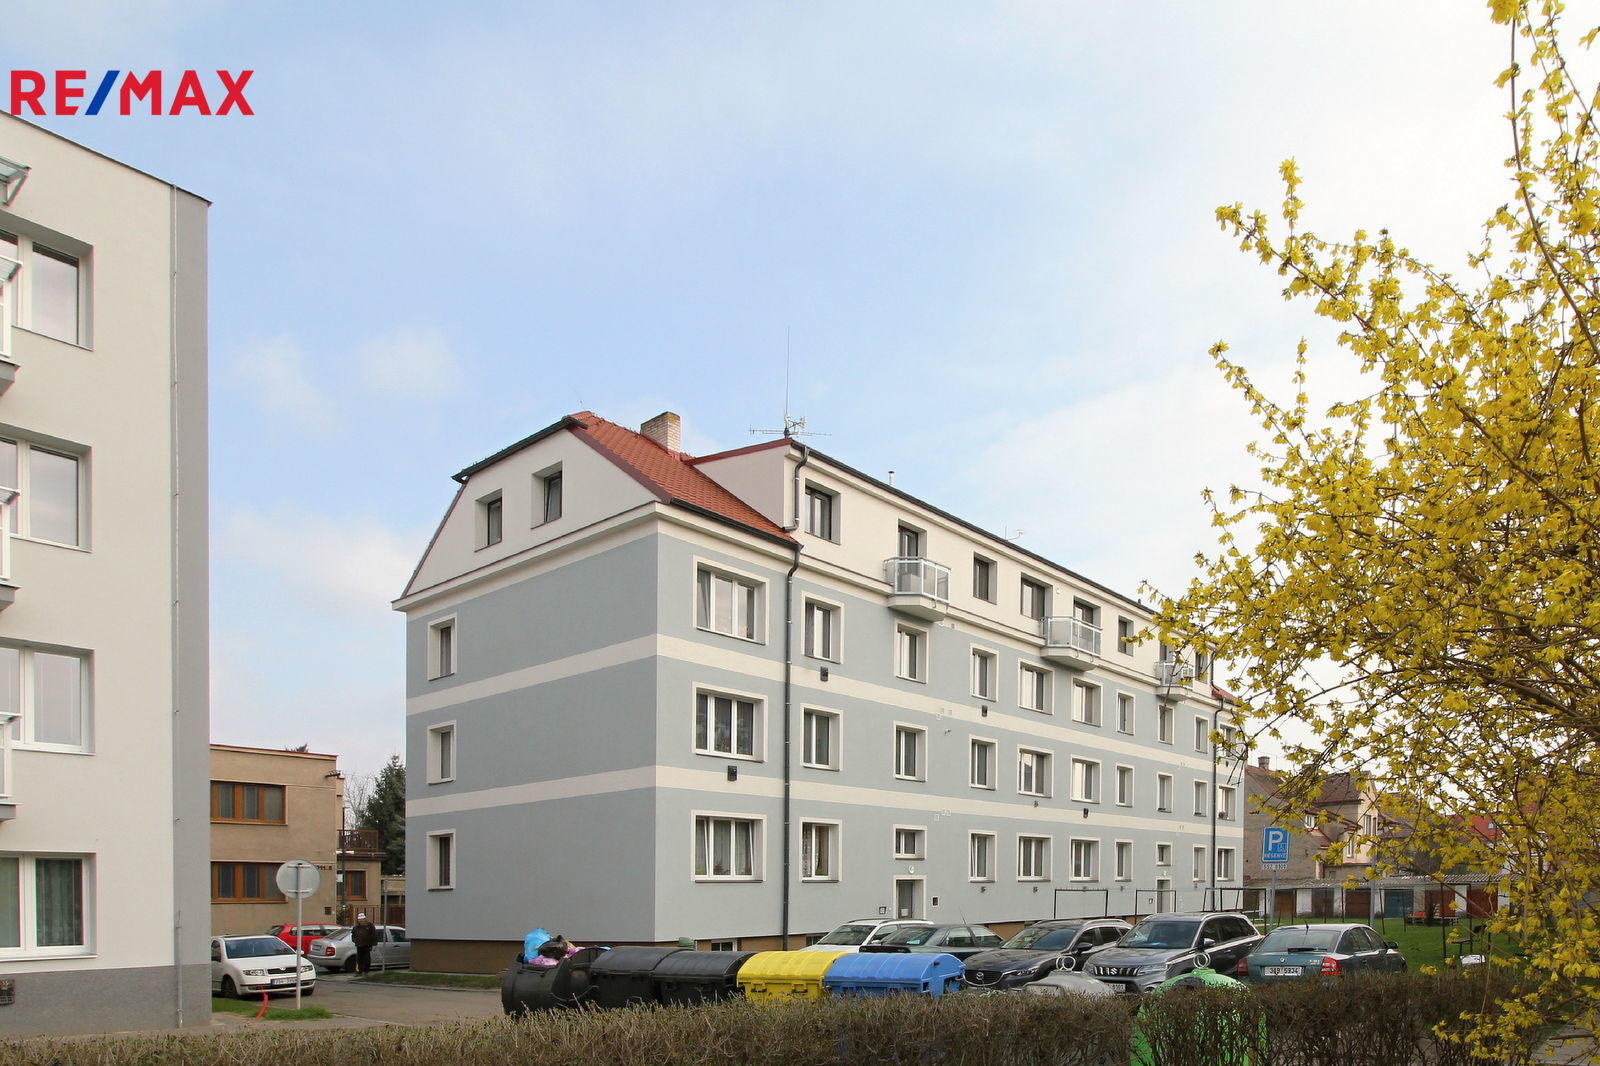 Pronájem bytu 2+1 v osobním vlastnictví, 56 m2, Nymburk